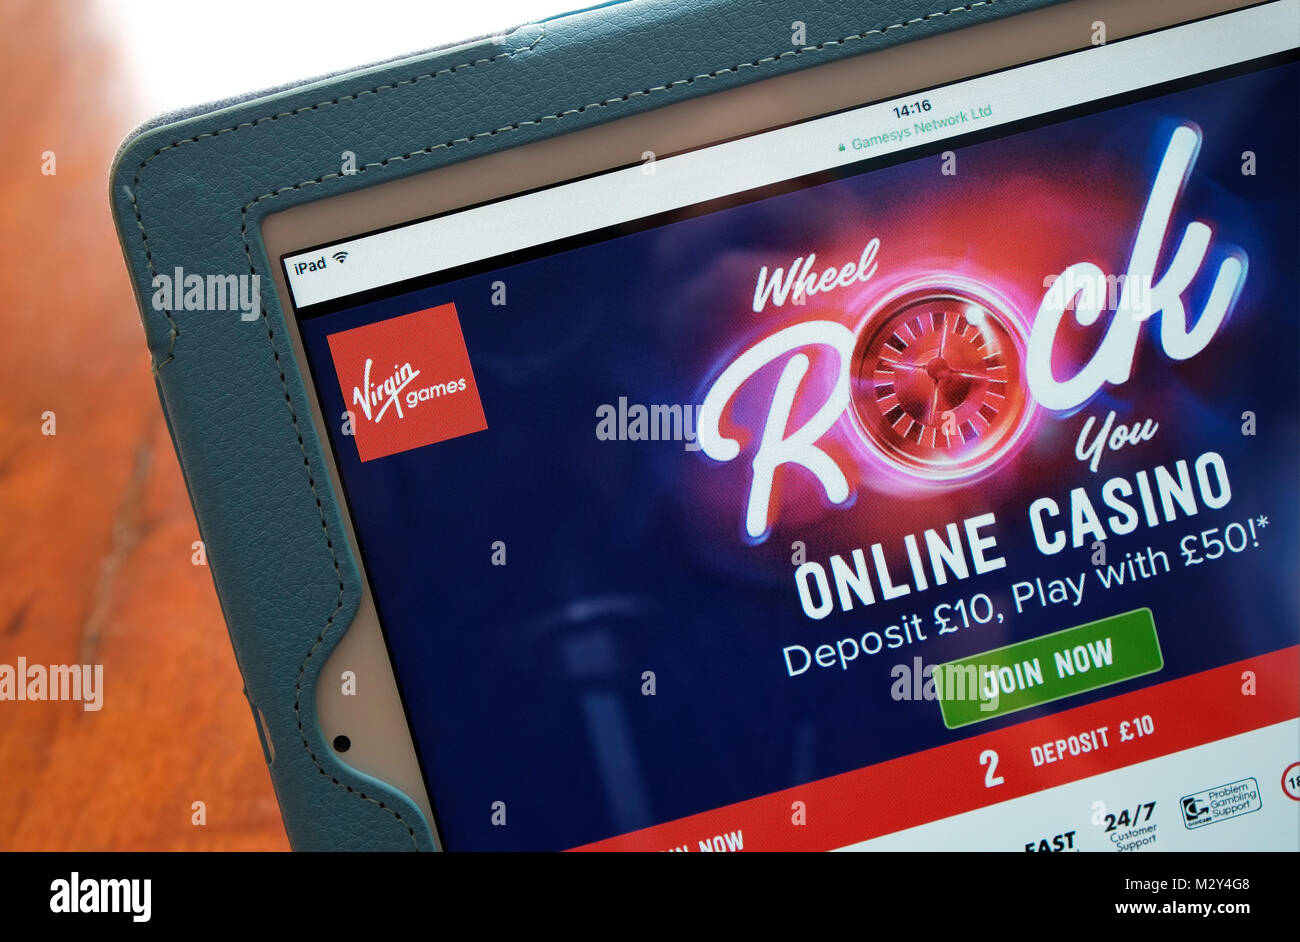 virgin games online casino, website homepage Stock Photo